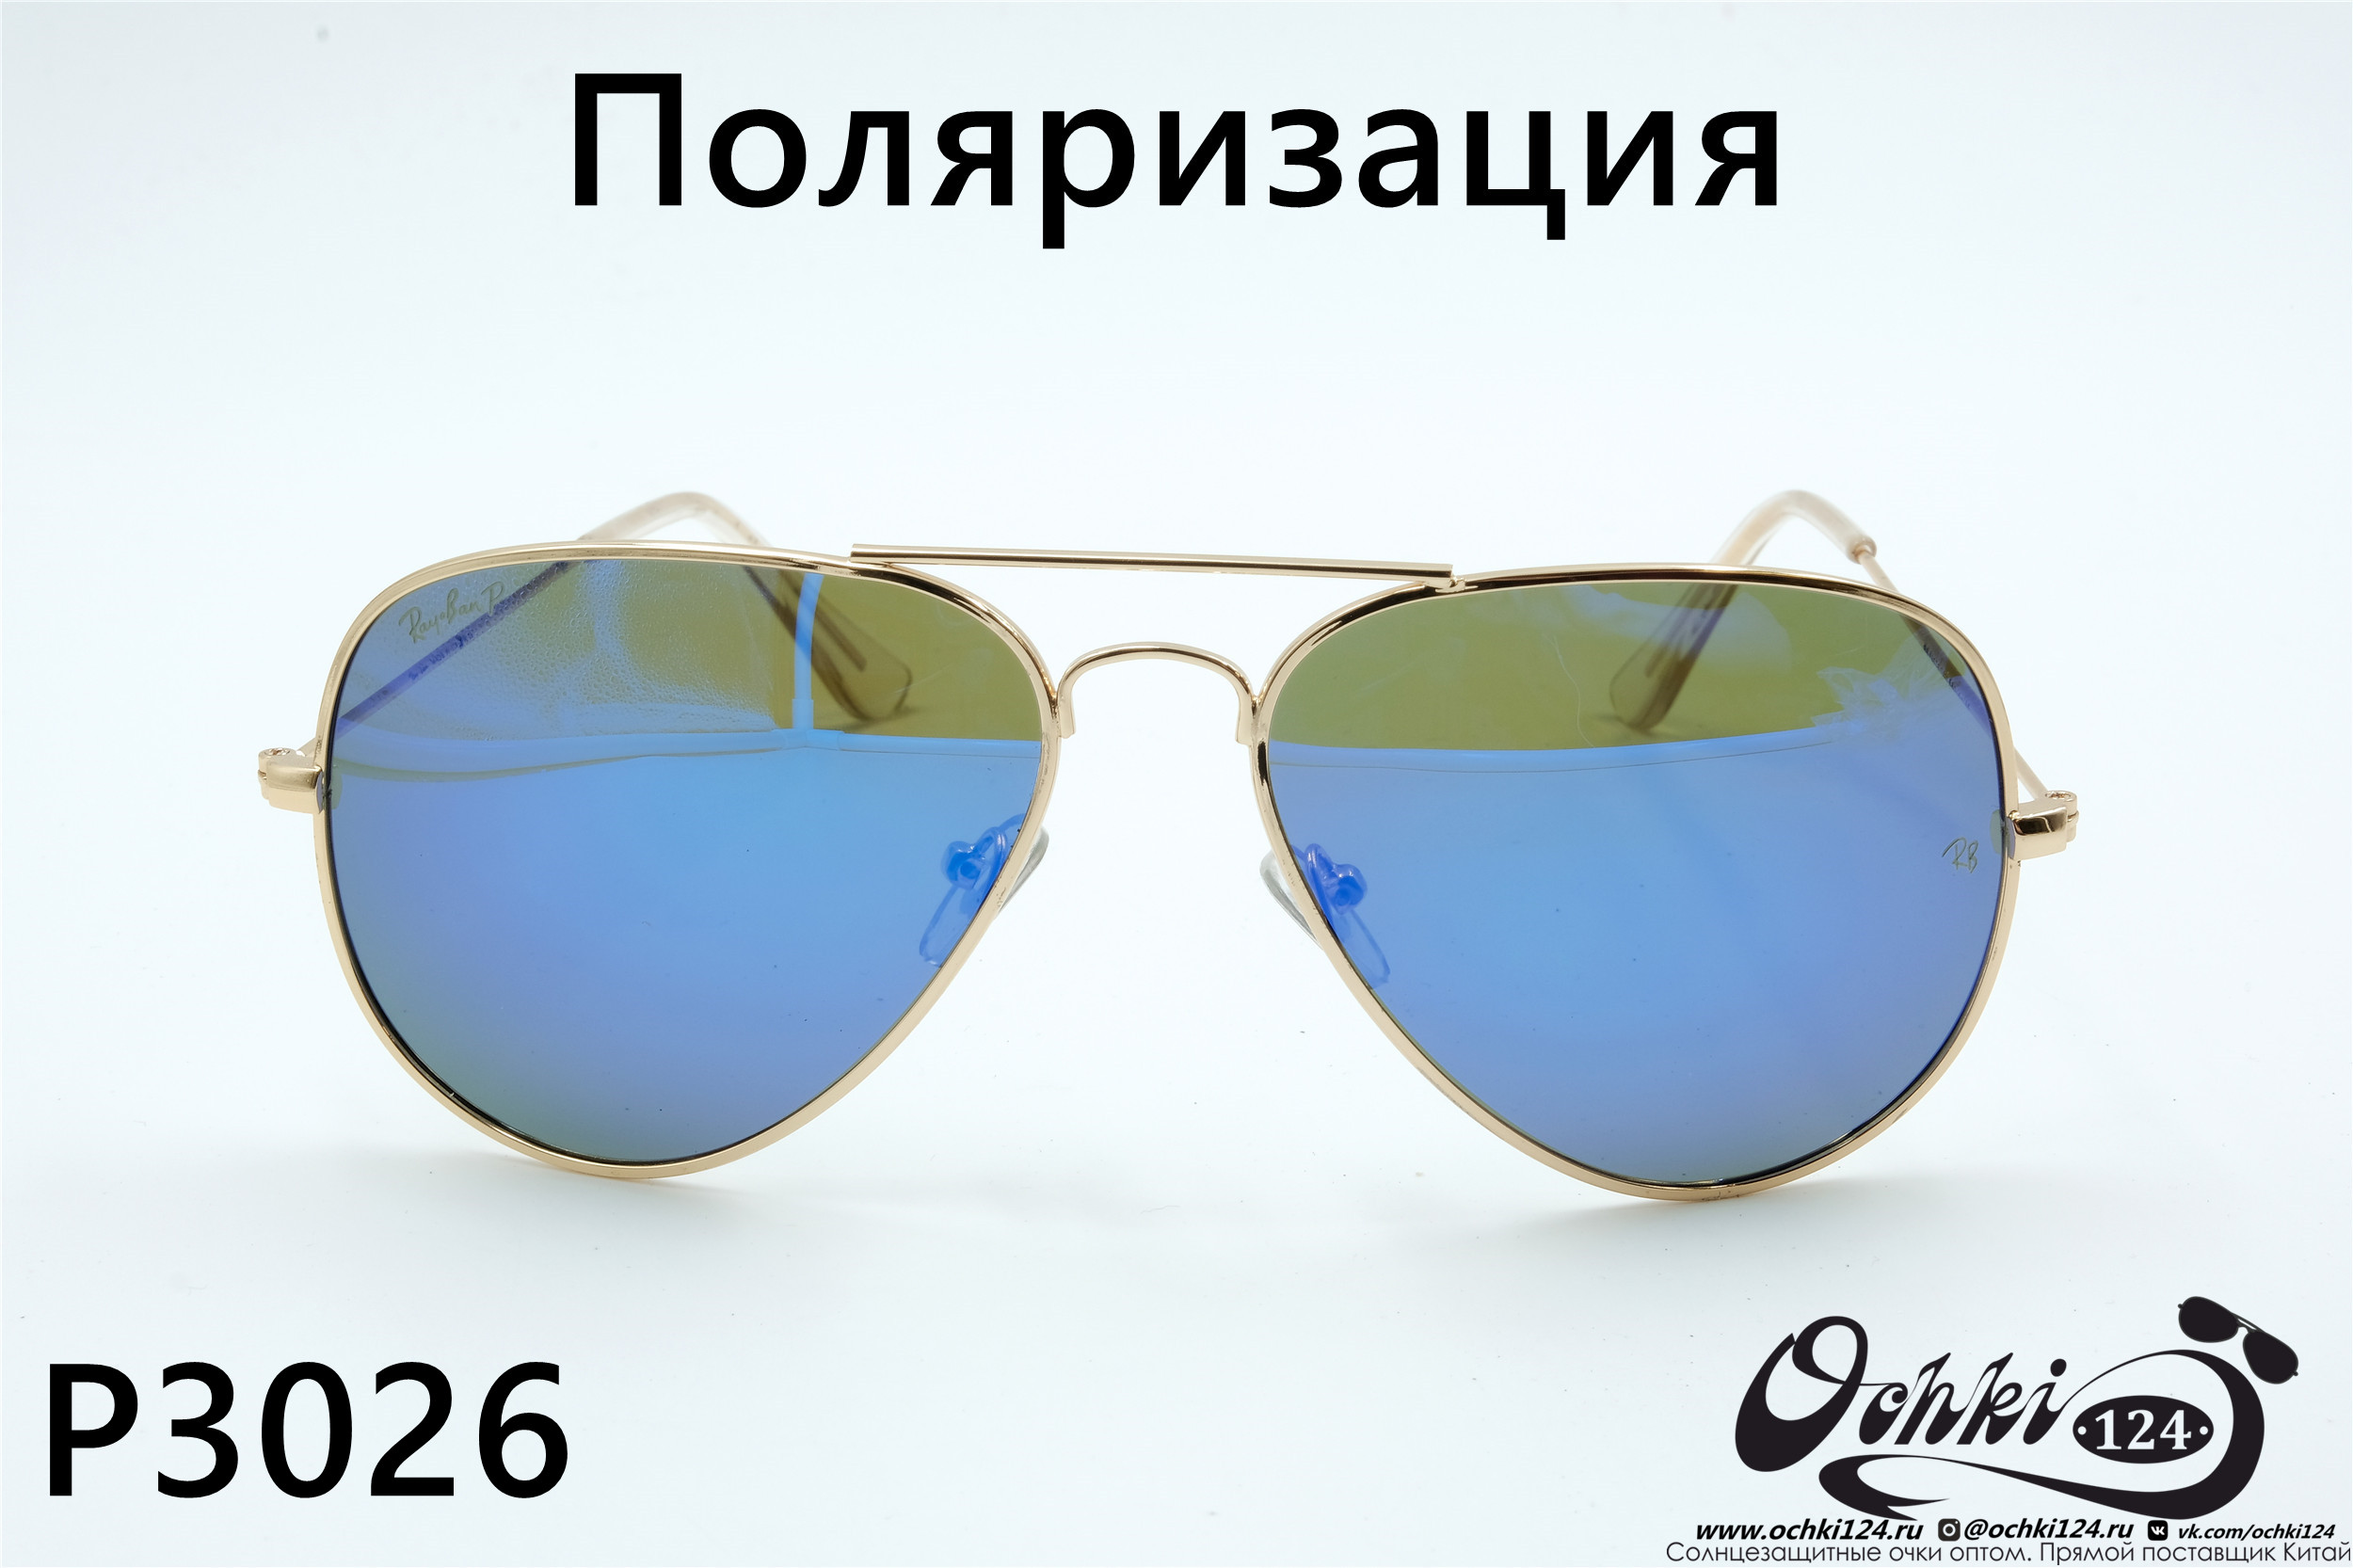  Солнцезащитные очки картинка 2022 Унисекс Поляризованные Авиаторы Rote Sonne P3026-1 